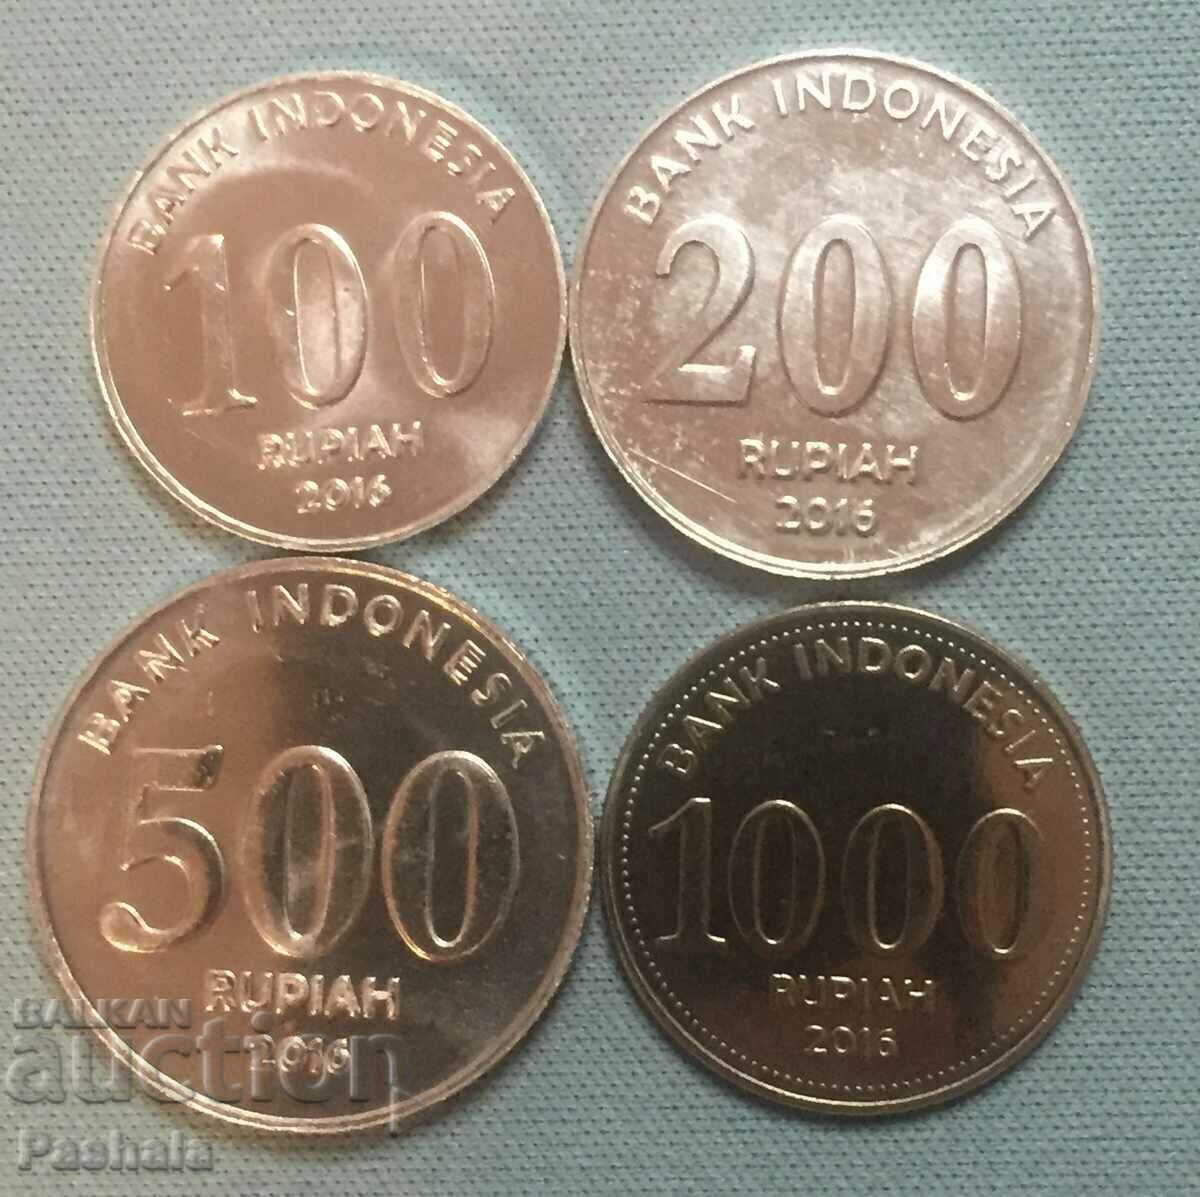 Ινδονησία 100, 200, 500, 1000 ρουπίες 2016